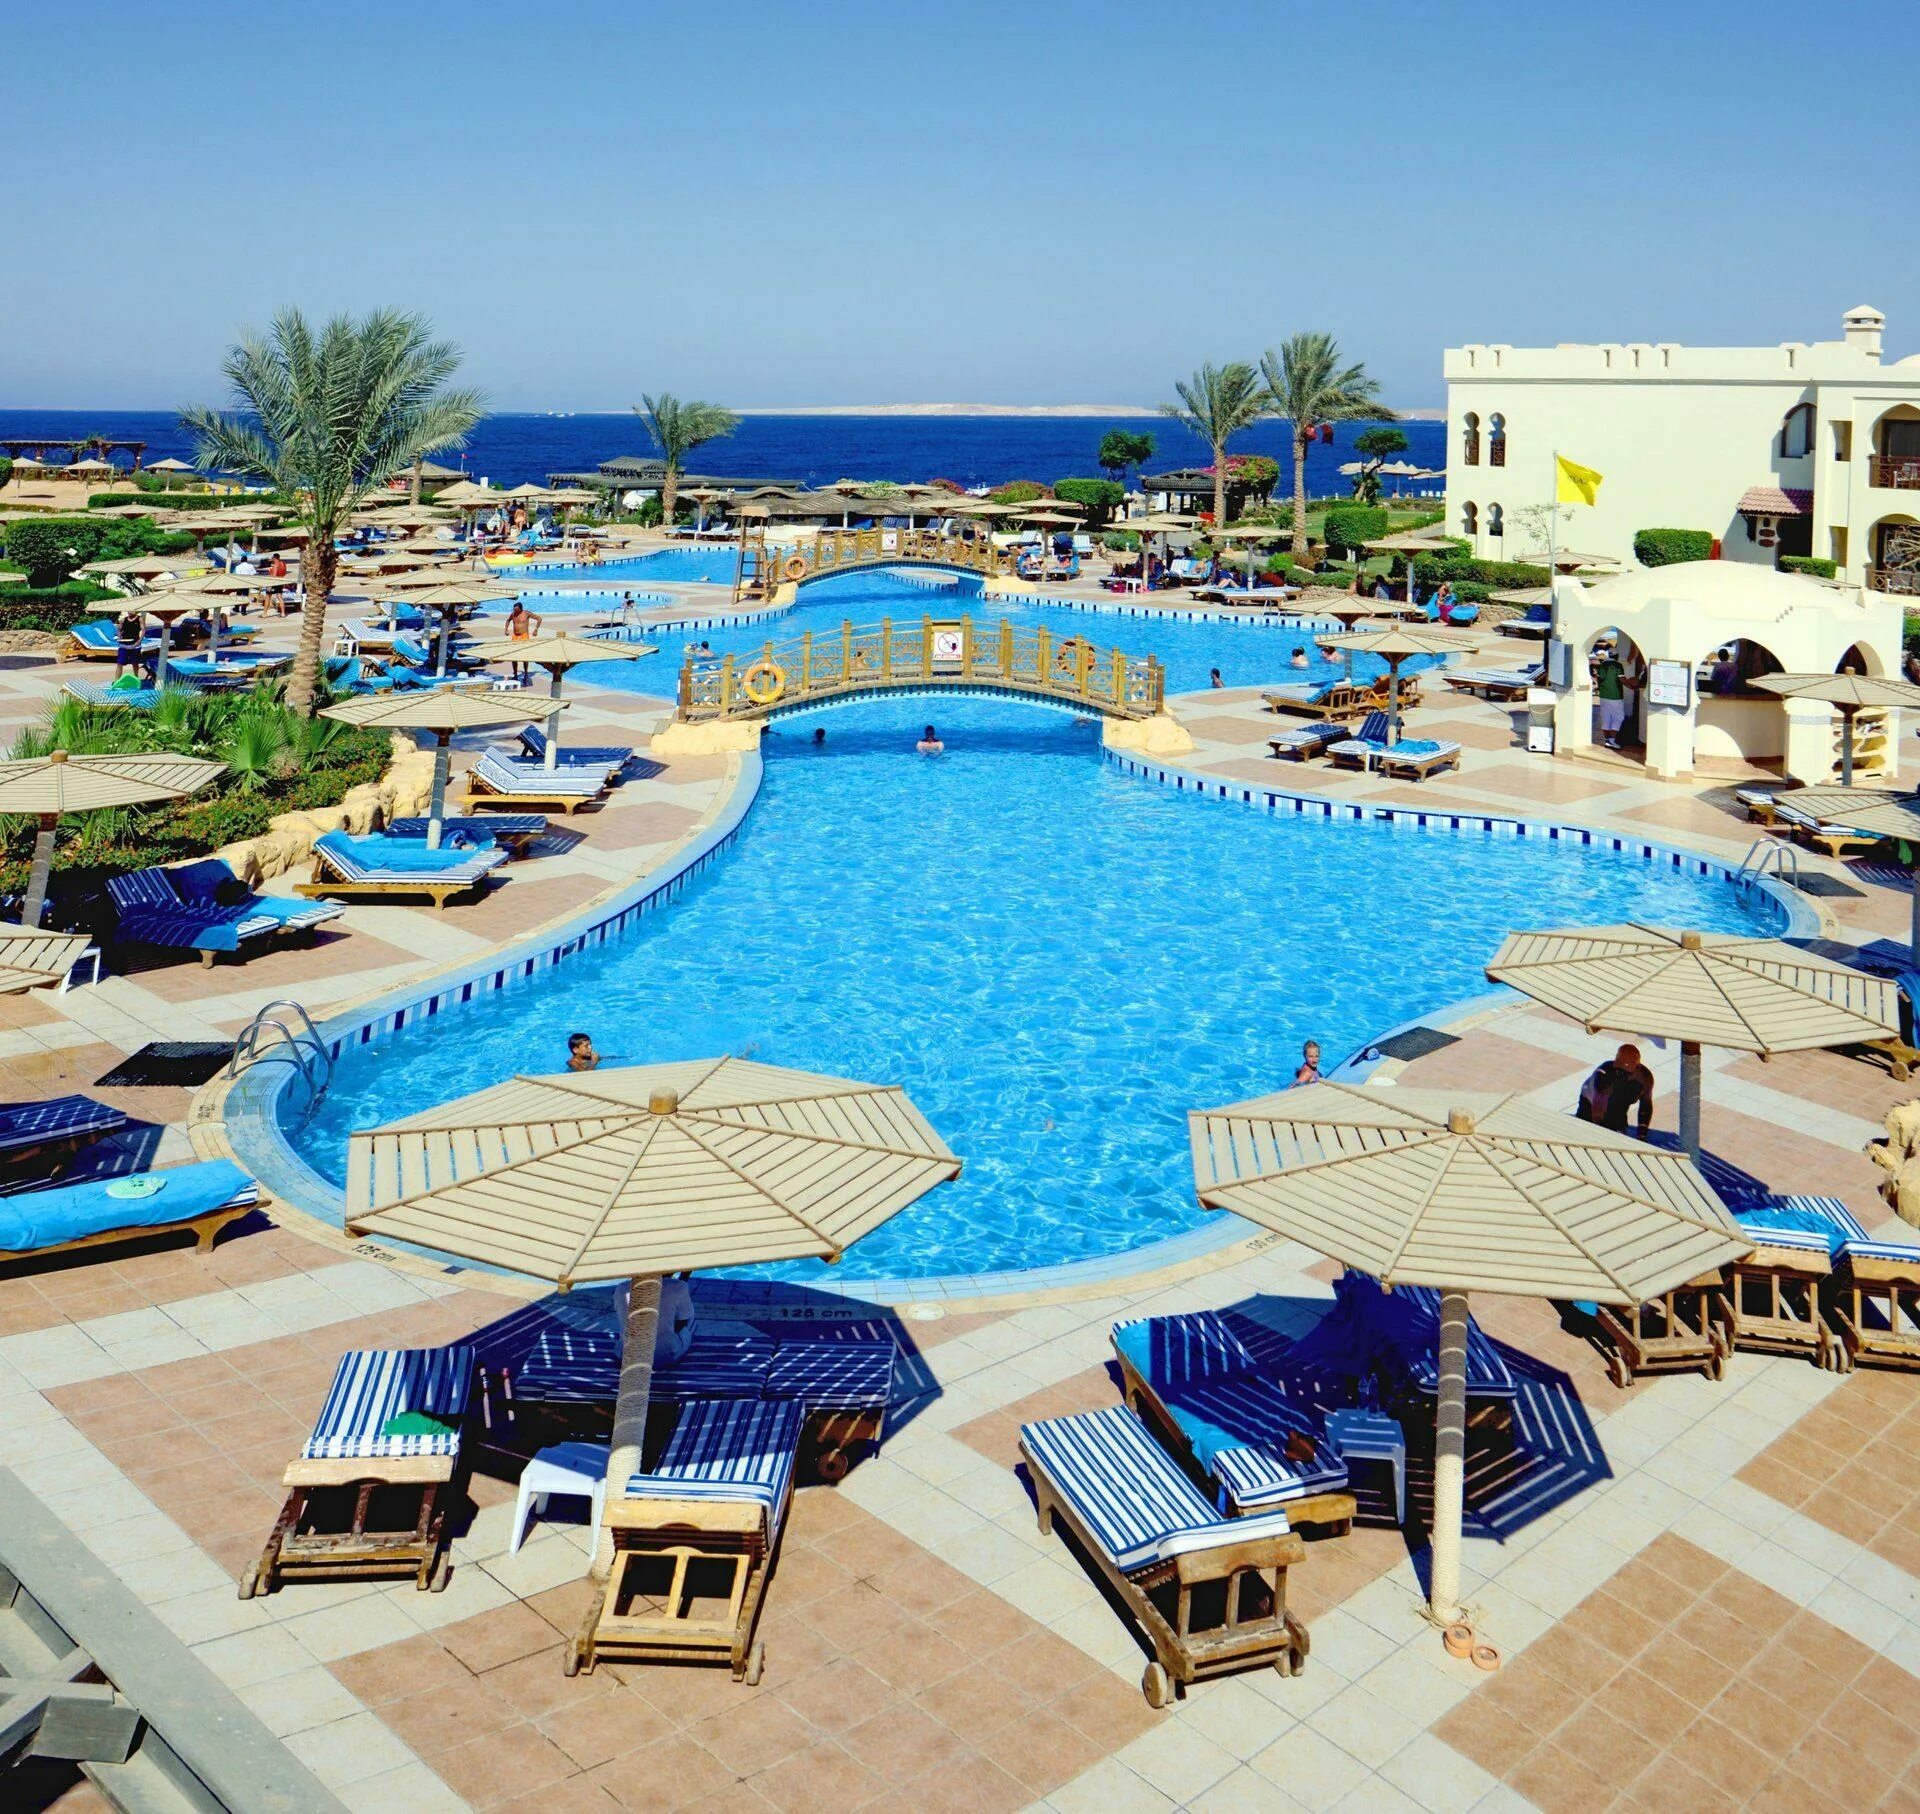 Отель Чармилион клаб Резорт Шарм-Эль-Шейх. Sea Club Resort 5 Шарм-Эль-Шейх. Charmillion отель Египет. Отели Египта Шарм-Эль-Шейх Charmillion Club Resort.